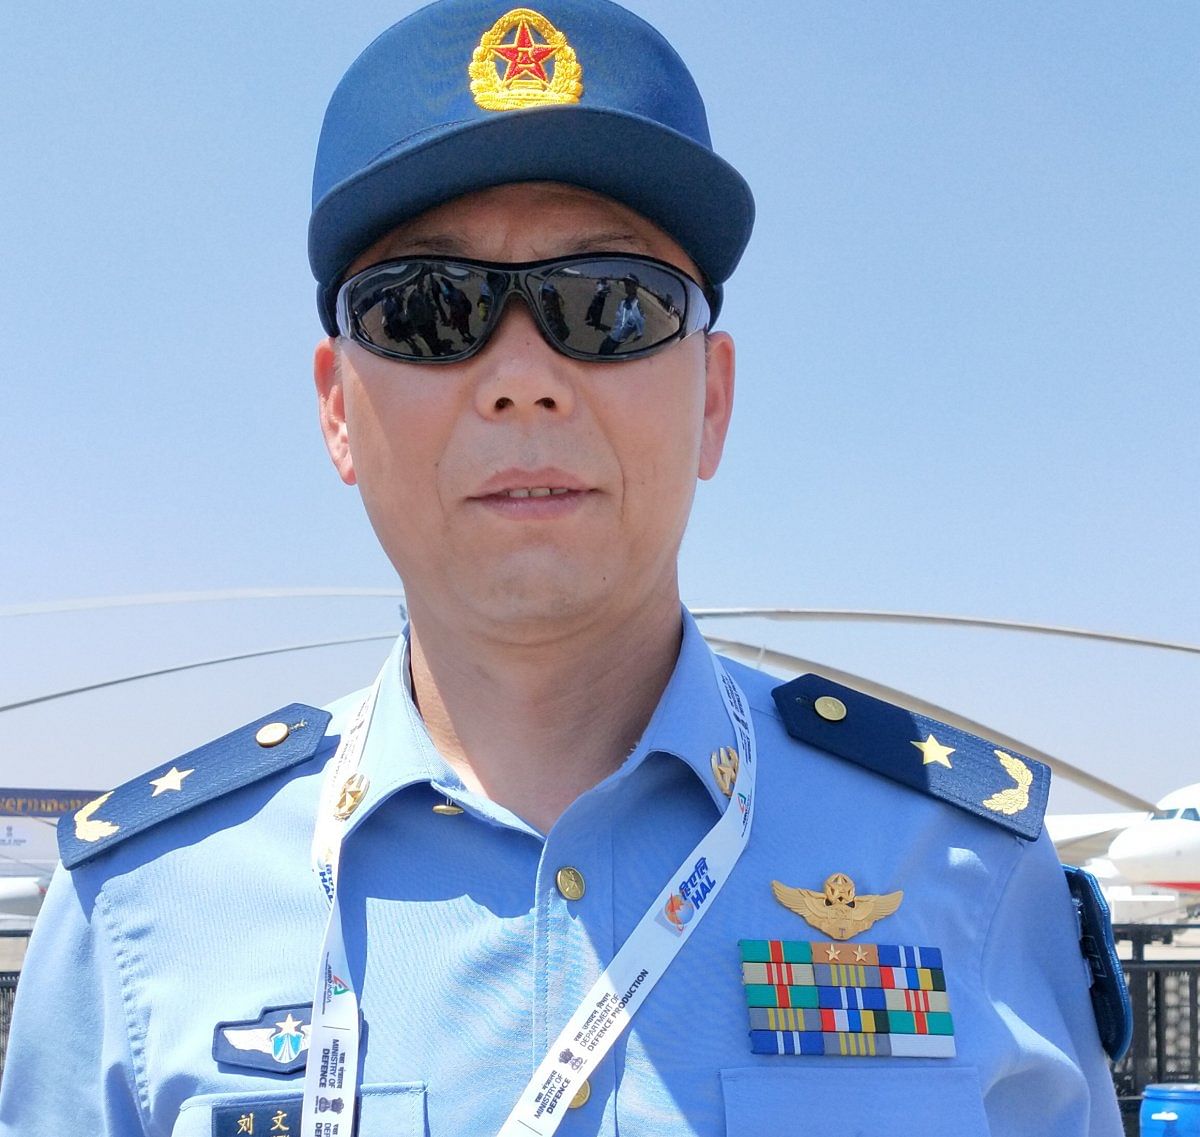 Major General Liu Wenqiis visiting from China.